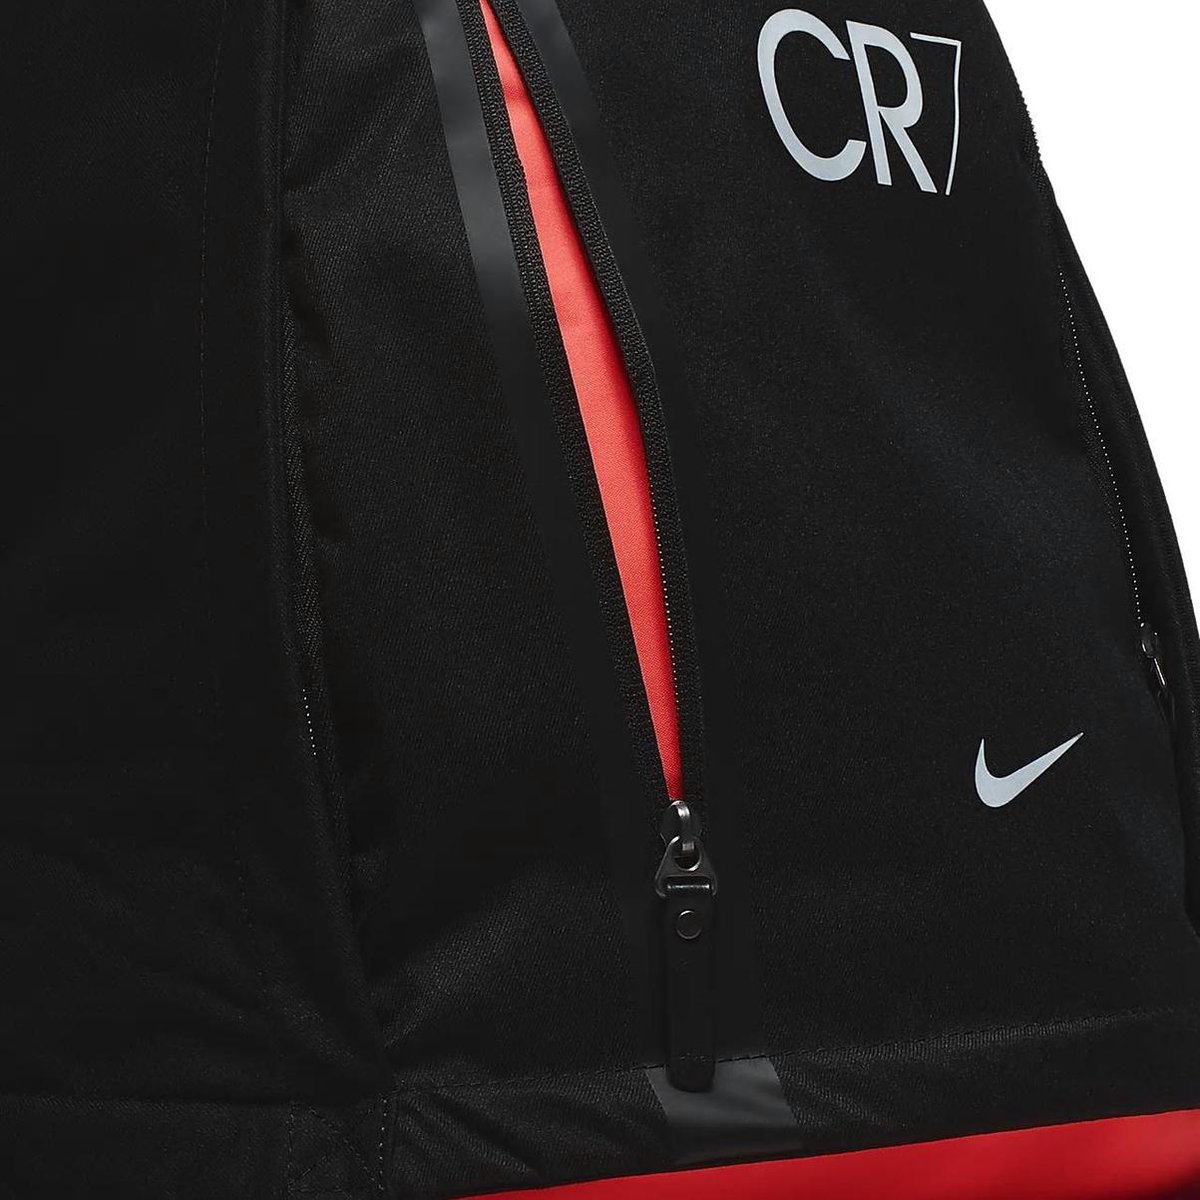 Nike CR7 rugtas voetbaltas sporttas - Ronaldo - zwart | bol.com